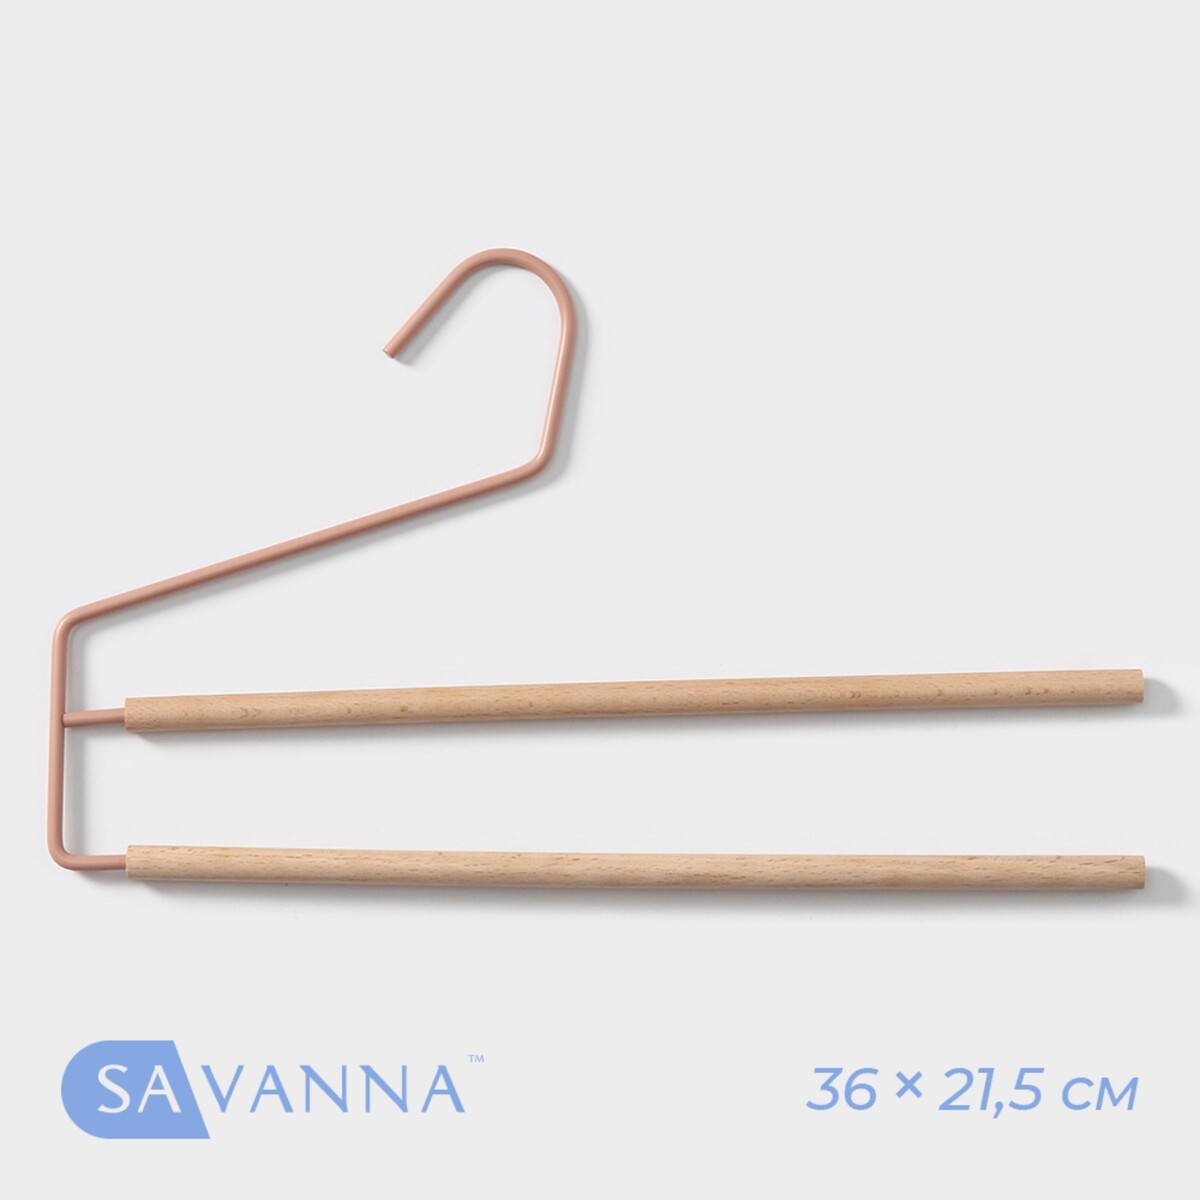 Плечики - вешалки многогуровневые для брюк и юбок savanna wood, 36×21,5×1,1 см, цвет розовый плечики вешалка для одежды ladо́m laconique 41 5×22 5×1 см розовый